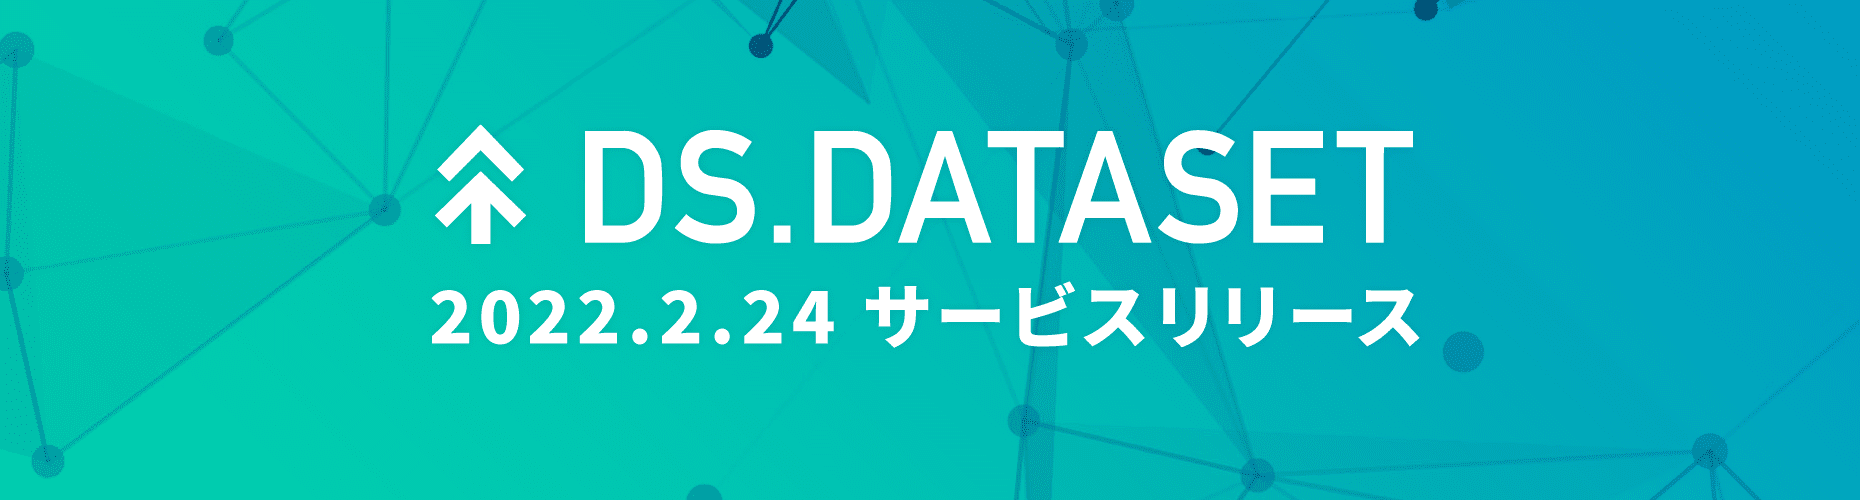 ヤフーのビッグデータを分析テーマごとに集計した新サービス『DS.DATASET』を開始